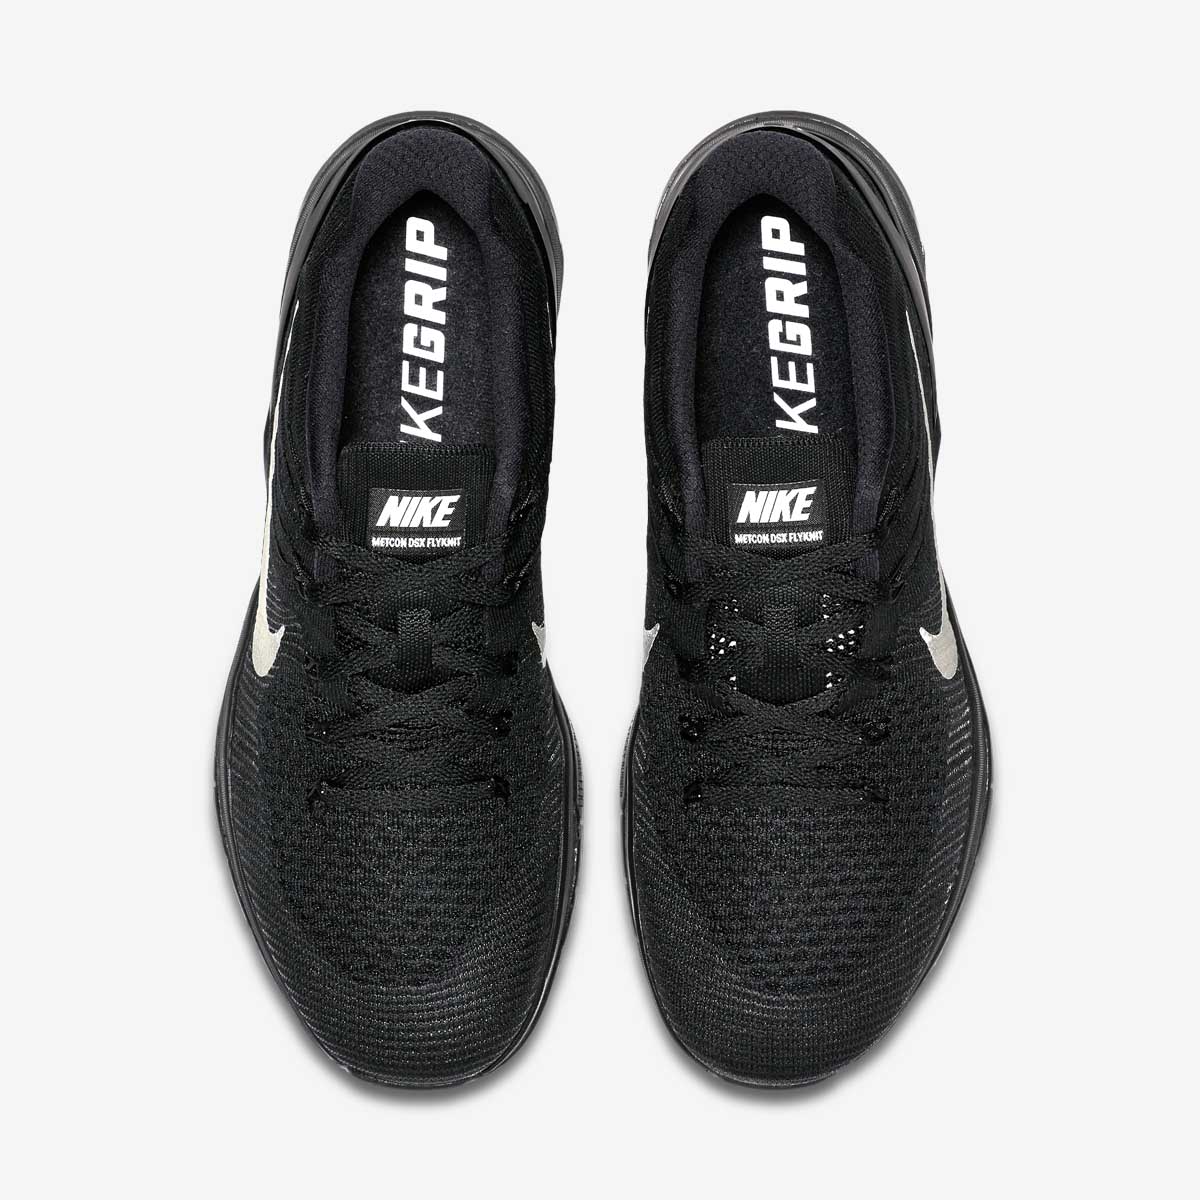 Кроссовки для тренировок Nike METCON DSX FLYKNIT